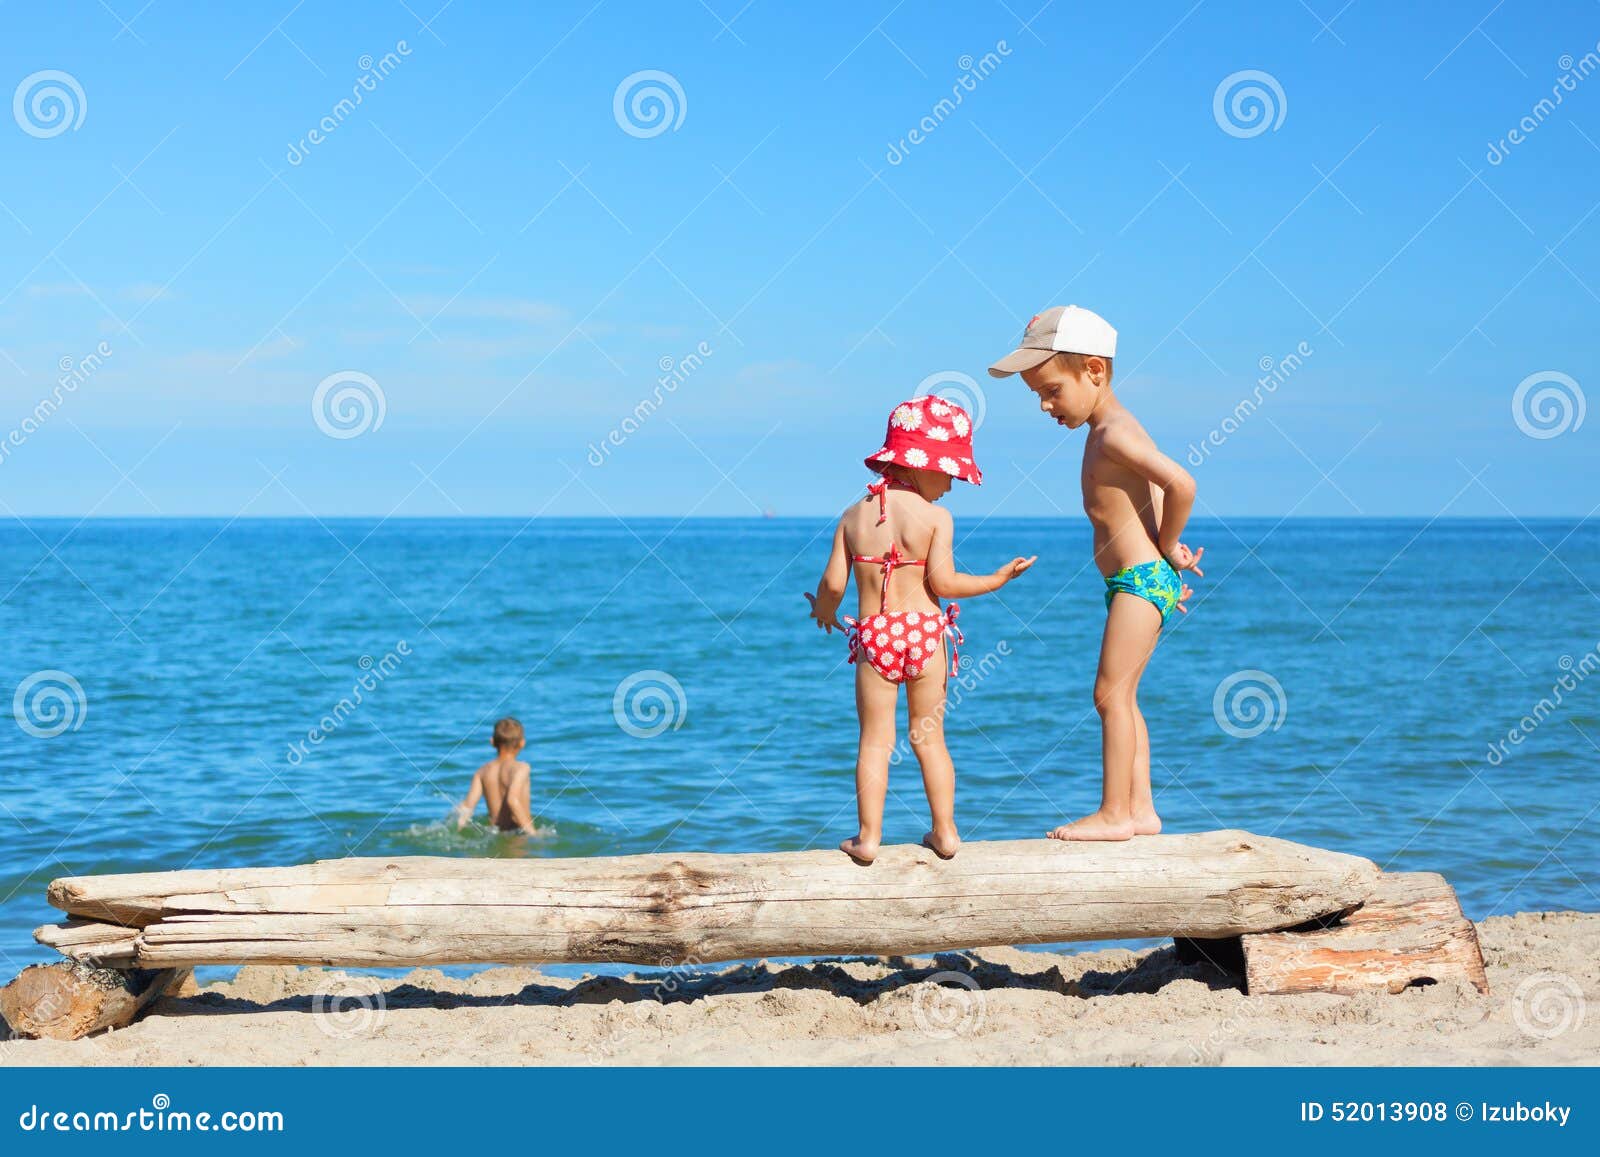 за голыми детьми на пляже фото 9